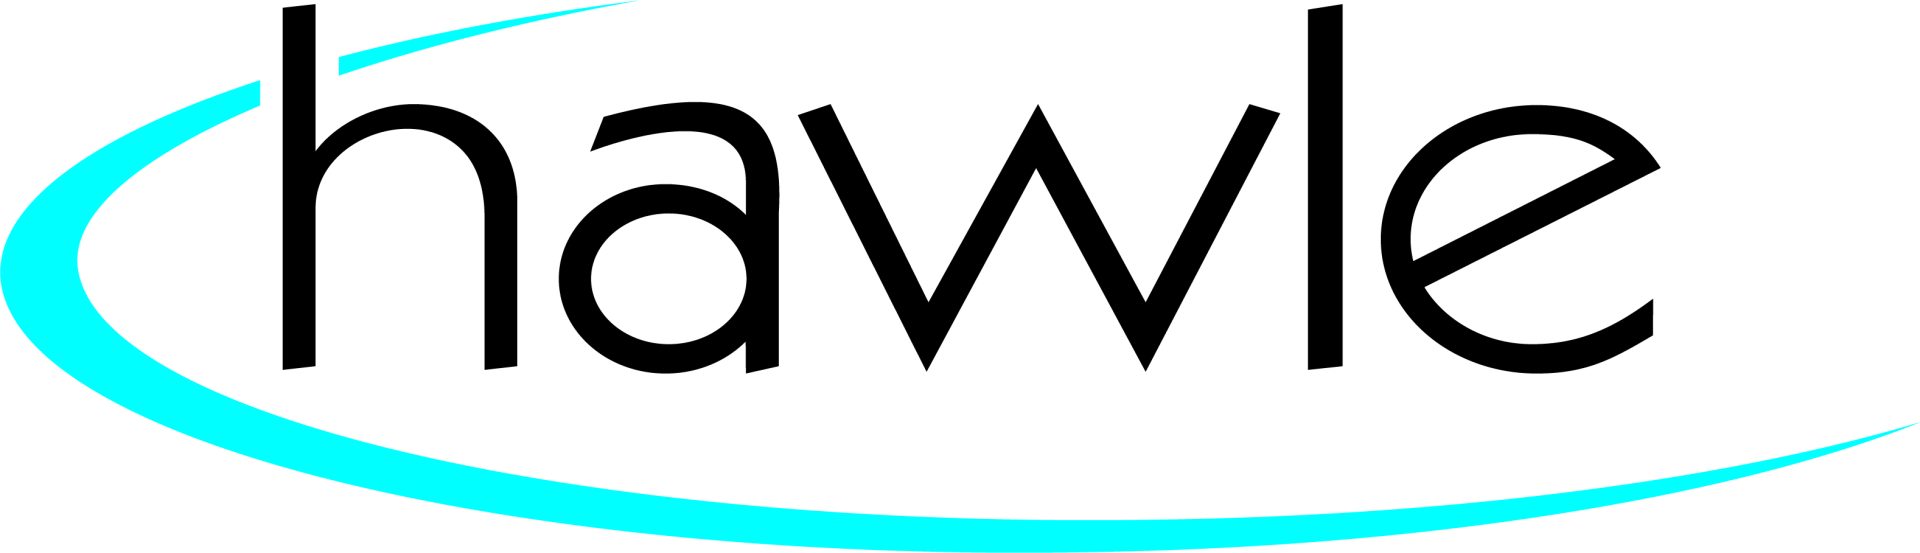 Hawle Logo CMYK 300 Dpi